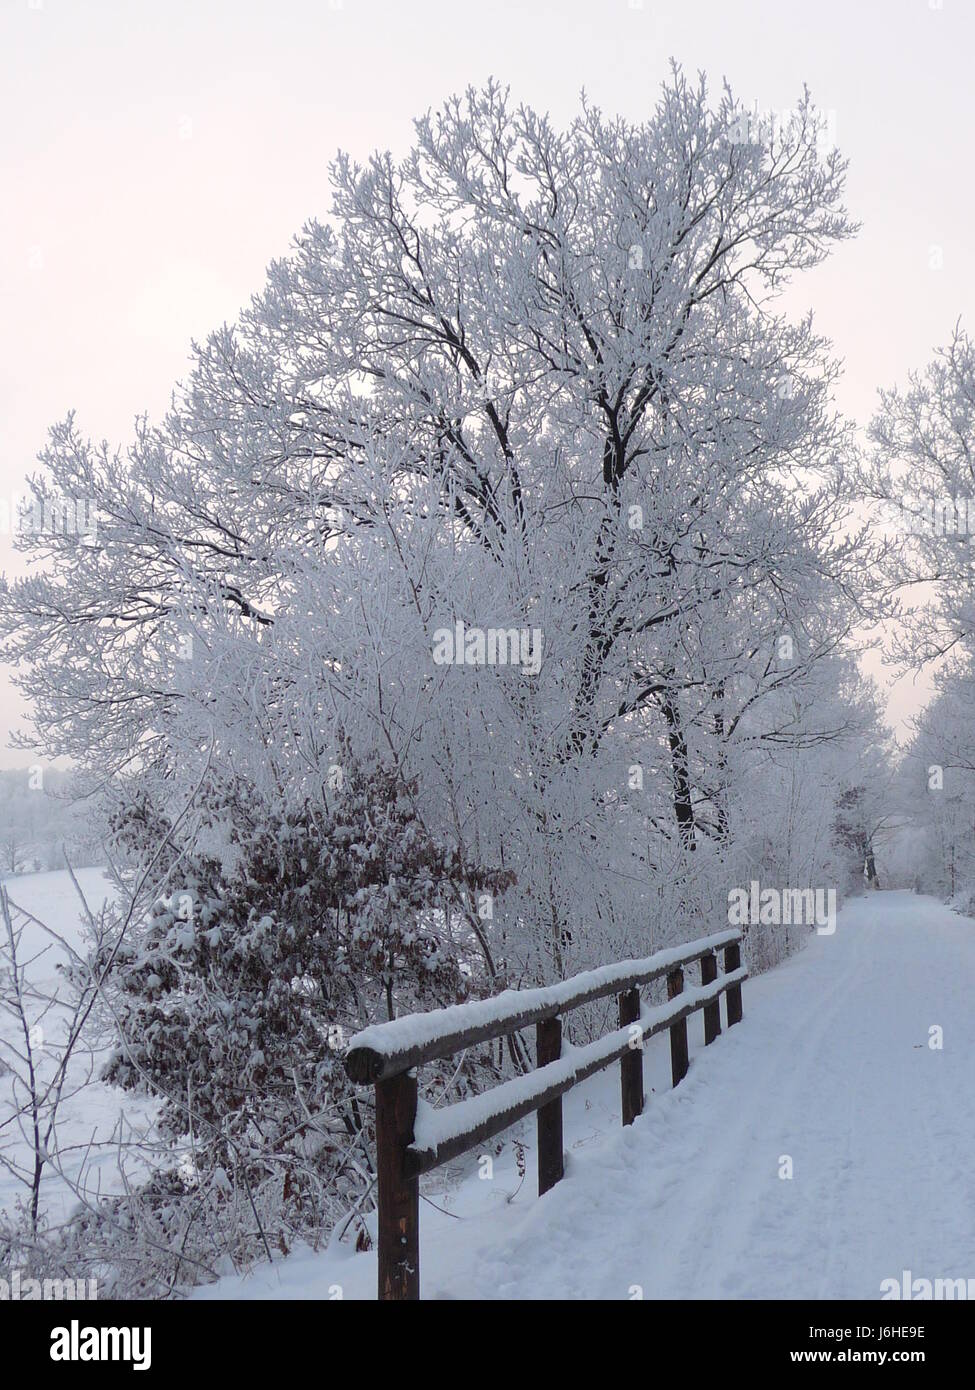 Jahreszeiten hiver baum bume brcke gelnder weg schnee winter jahreszeit Banque D'Images